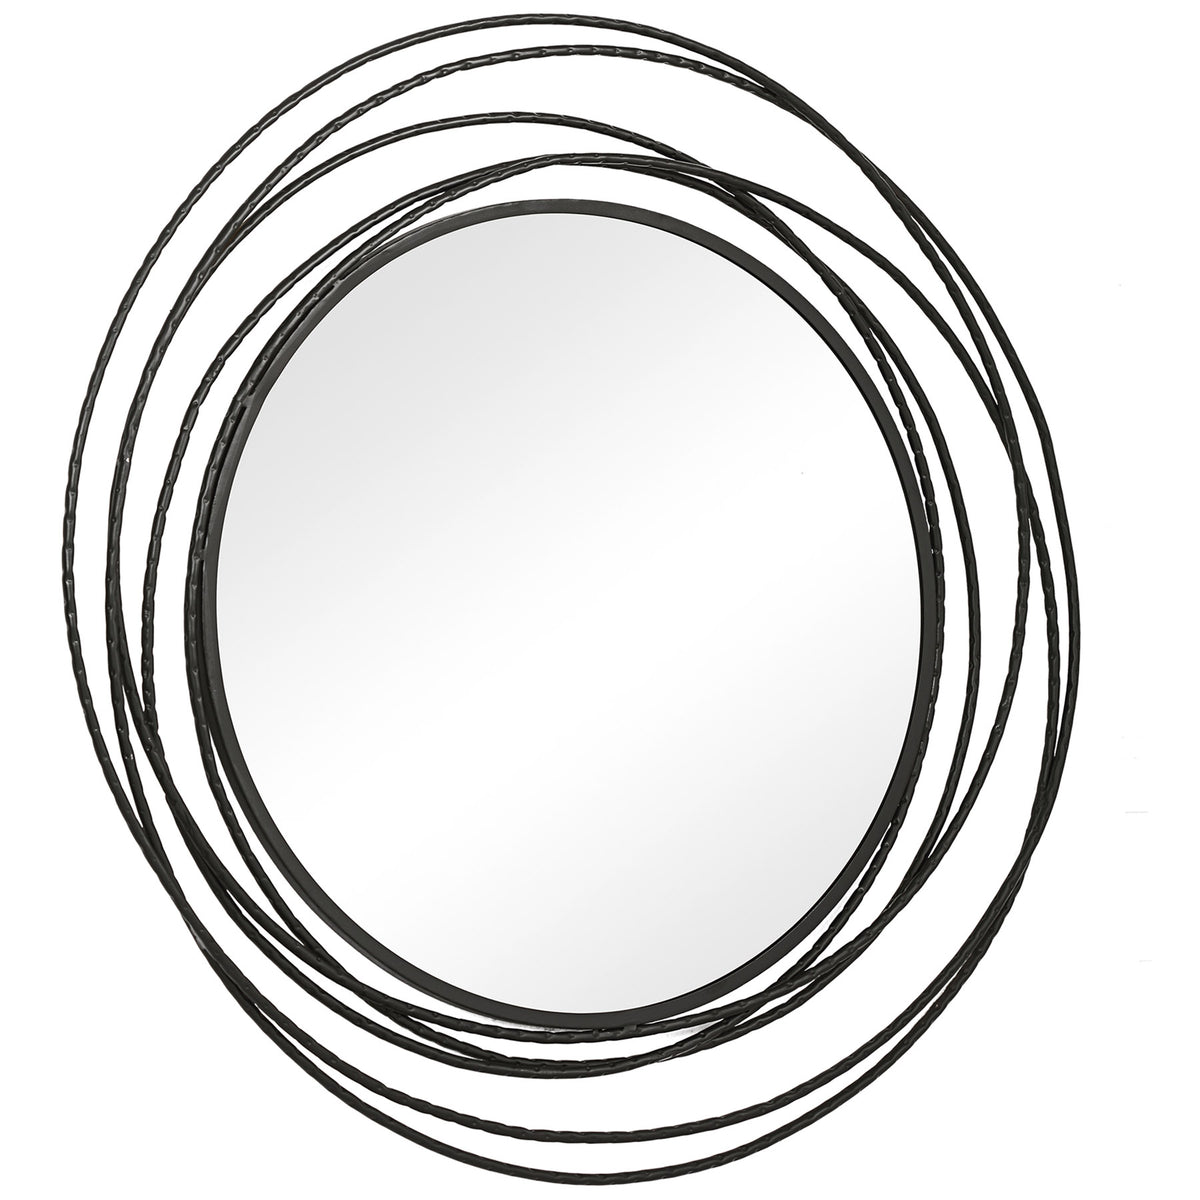 Whirlwind Black Round Mirror